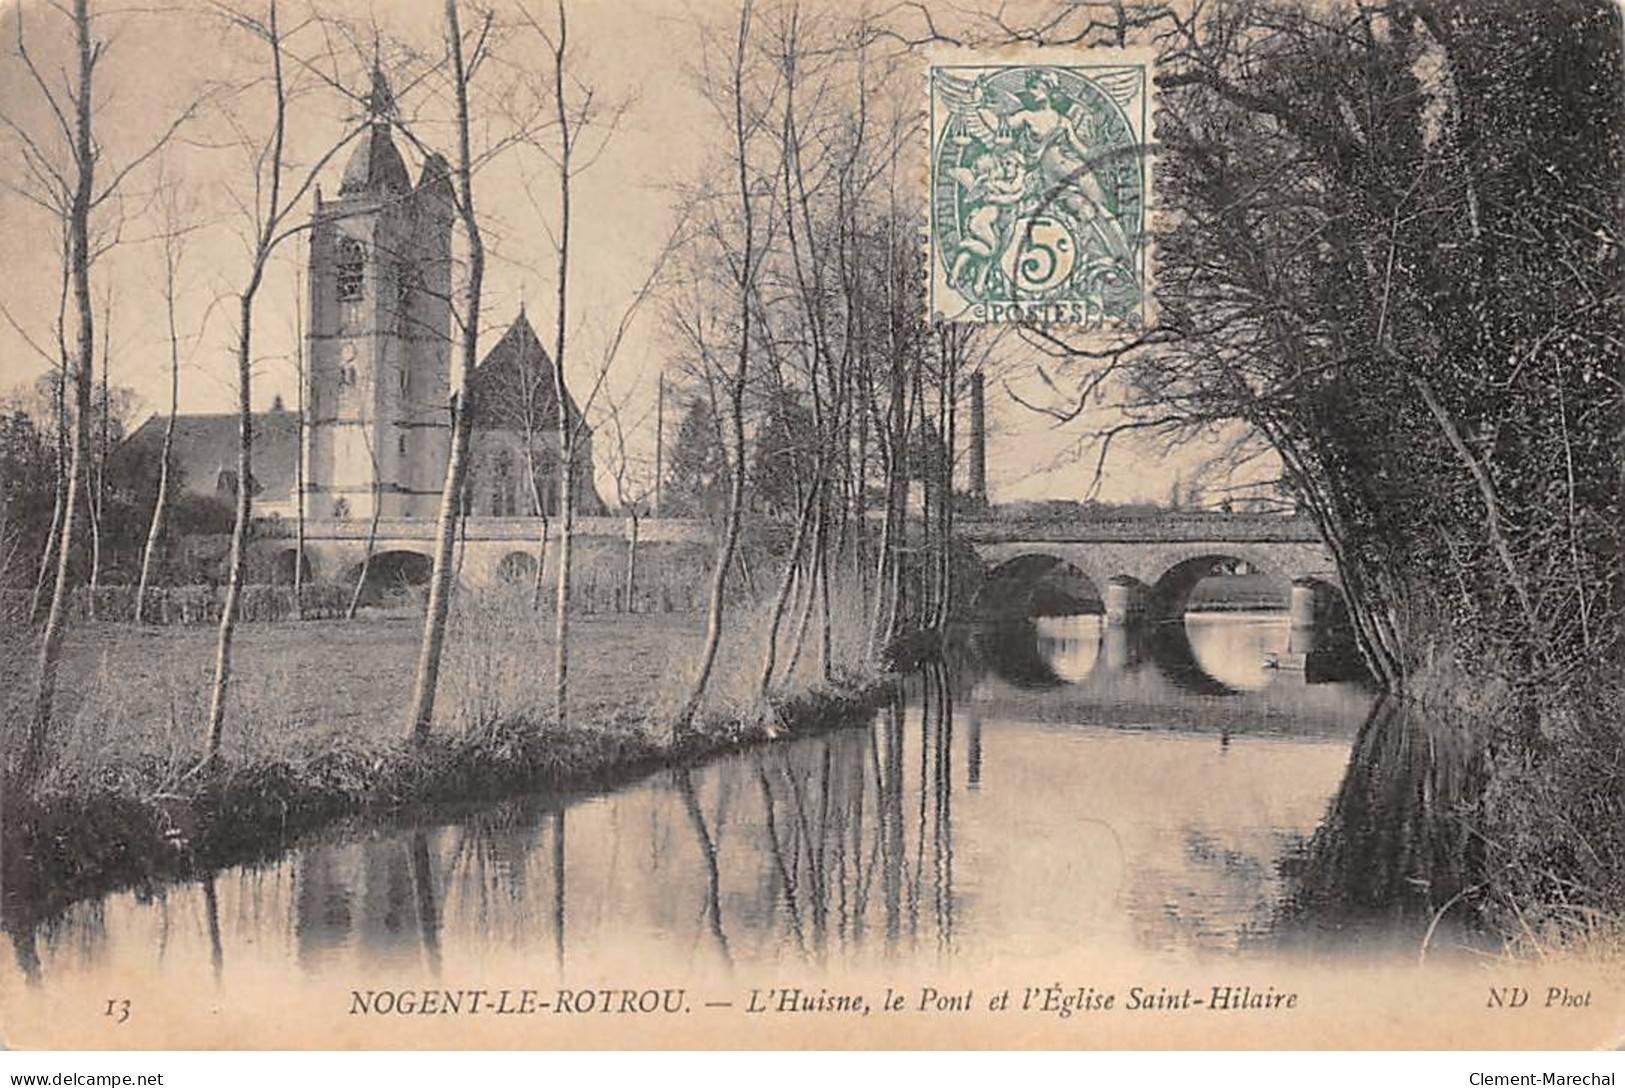 NOGENT LE ROTROU - L'Huisne, le Pont et l'Eglise Saint Hilaire - très bon état